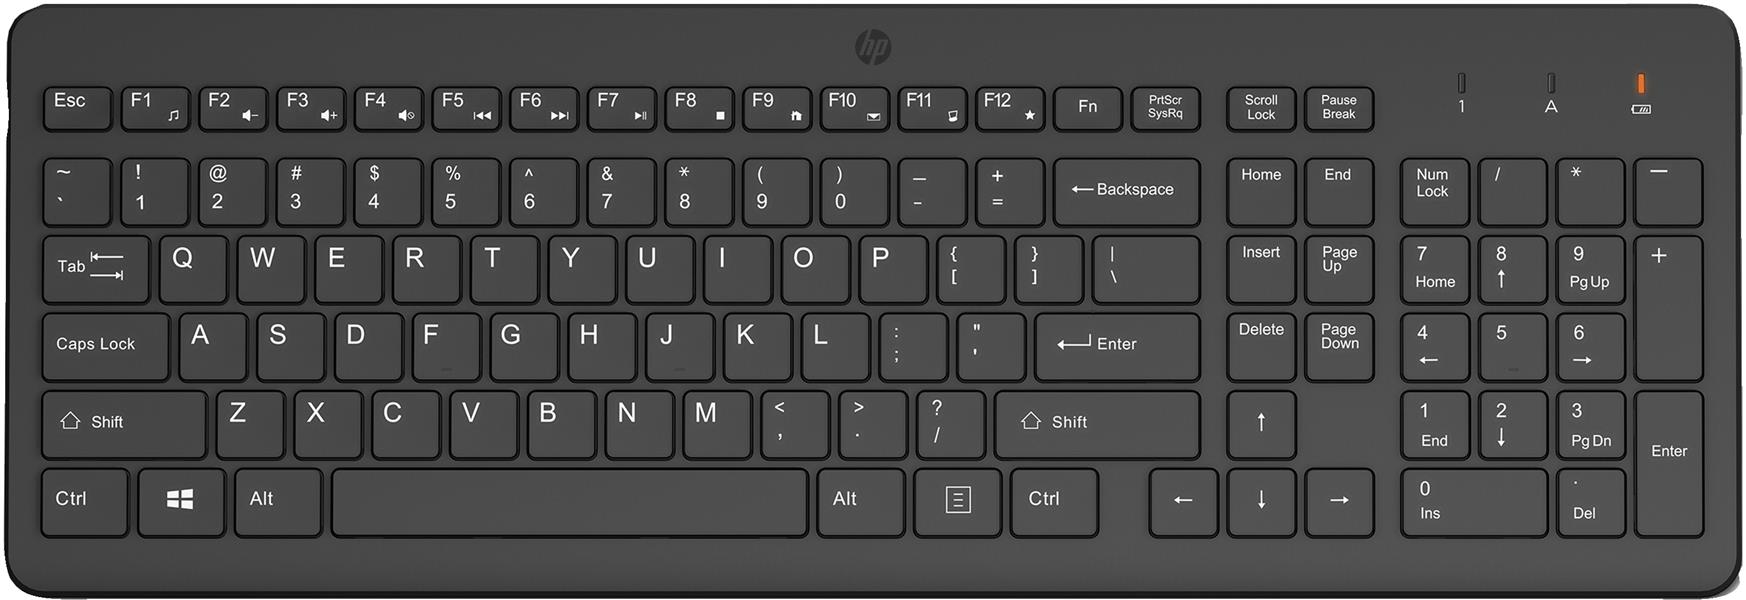 HP 225 draadloos toetsenbord